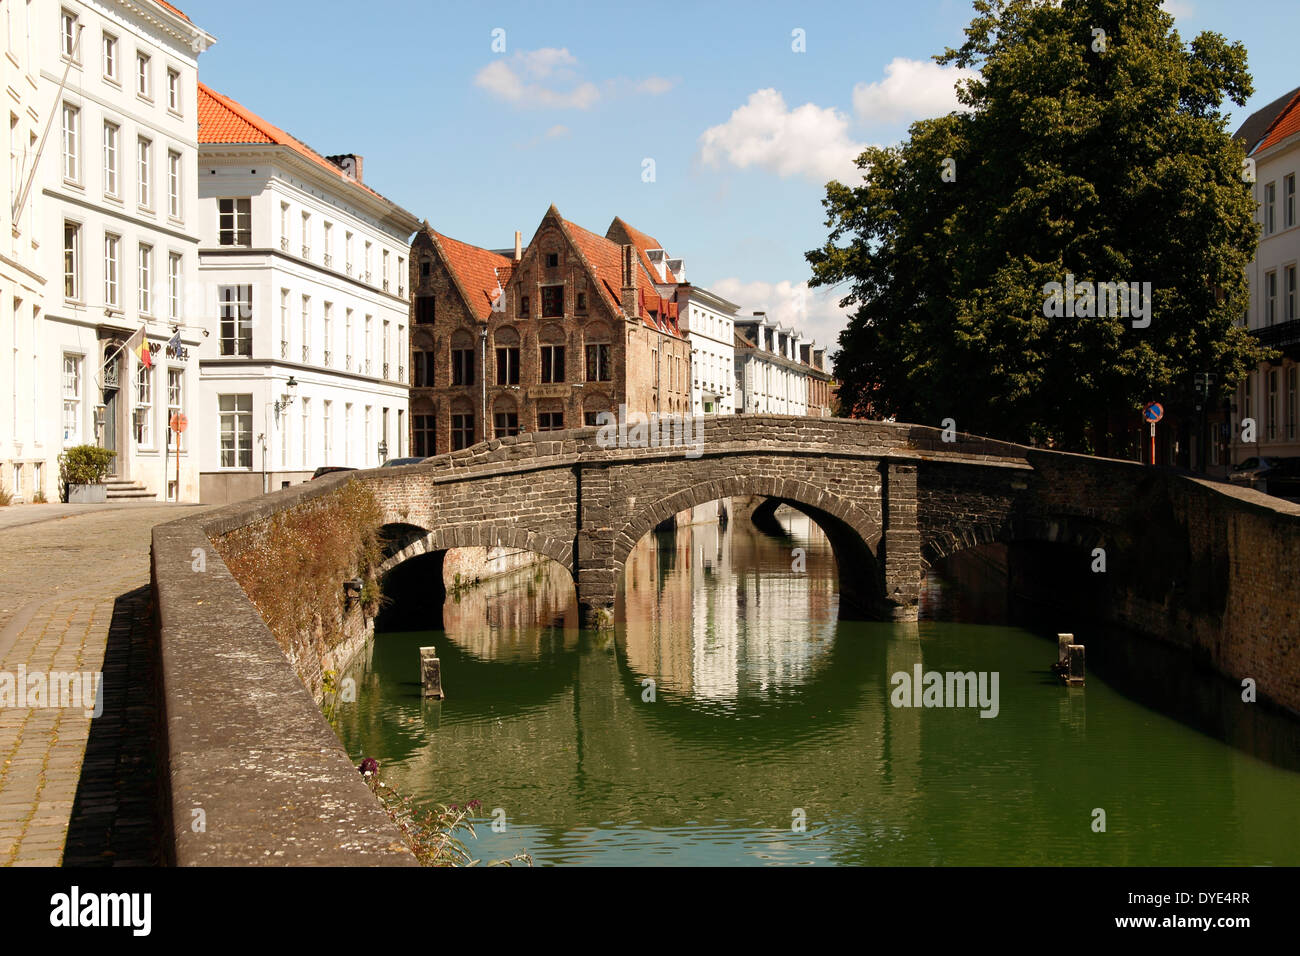 Kanalbrücke und mittelalterlichen Häusern entlang des Kanals bei Gouden-Handrei, Brügge, Belgien Stockfoto